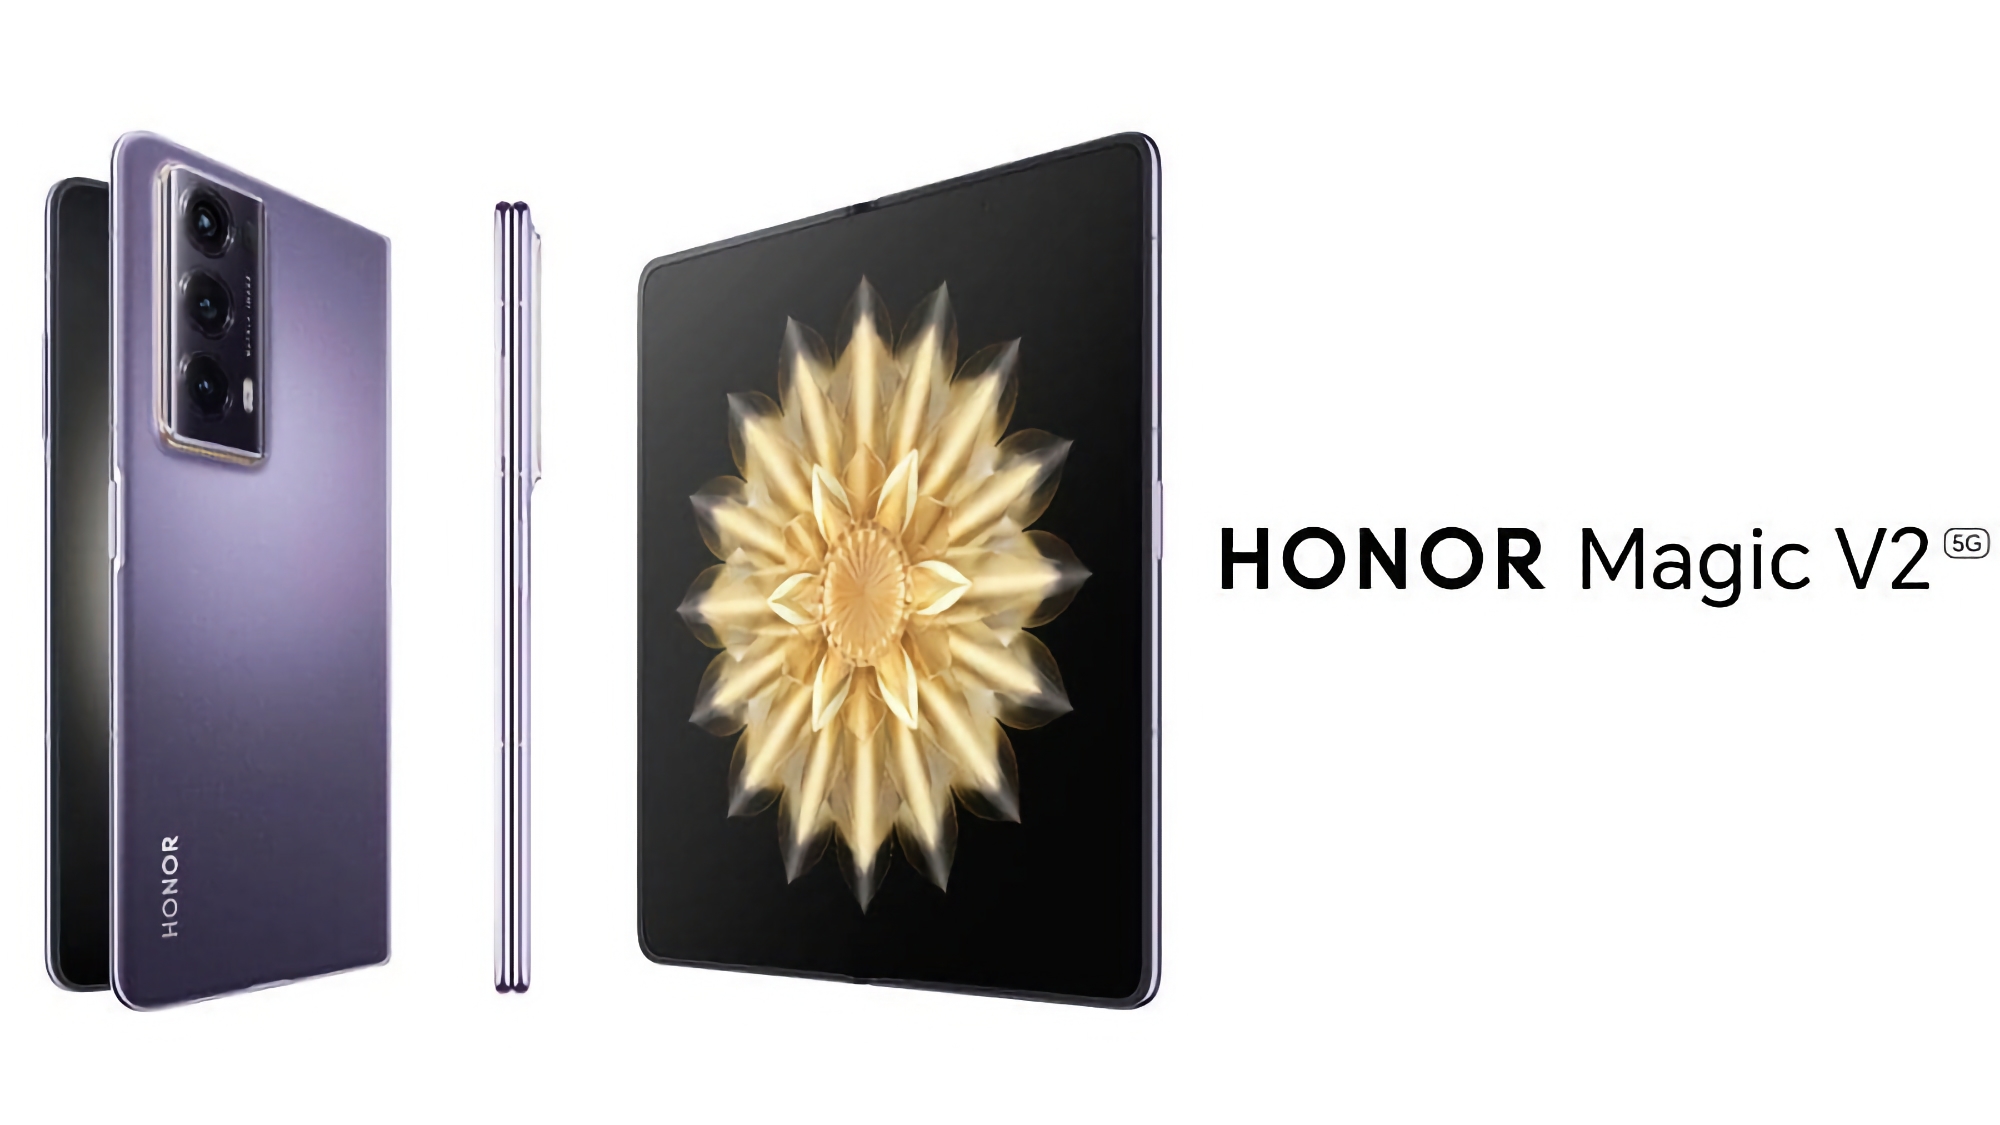 El Honor Magic V2, el smartphone plegable más ligero y fino del mercado, debutará en Europa el 26 de enero